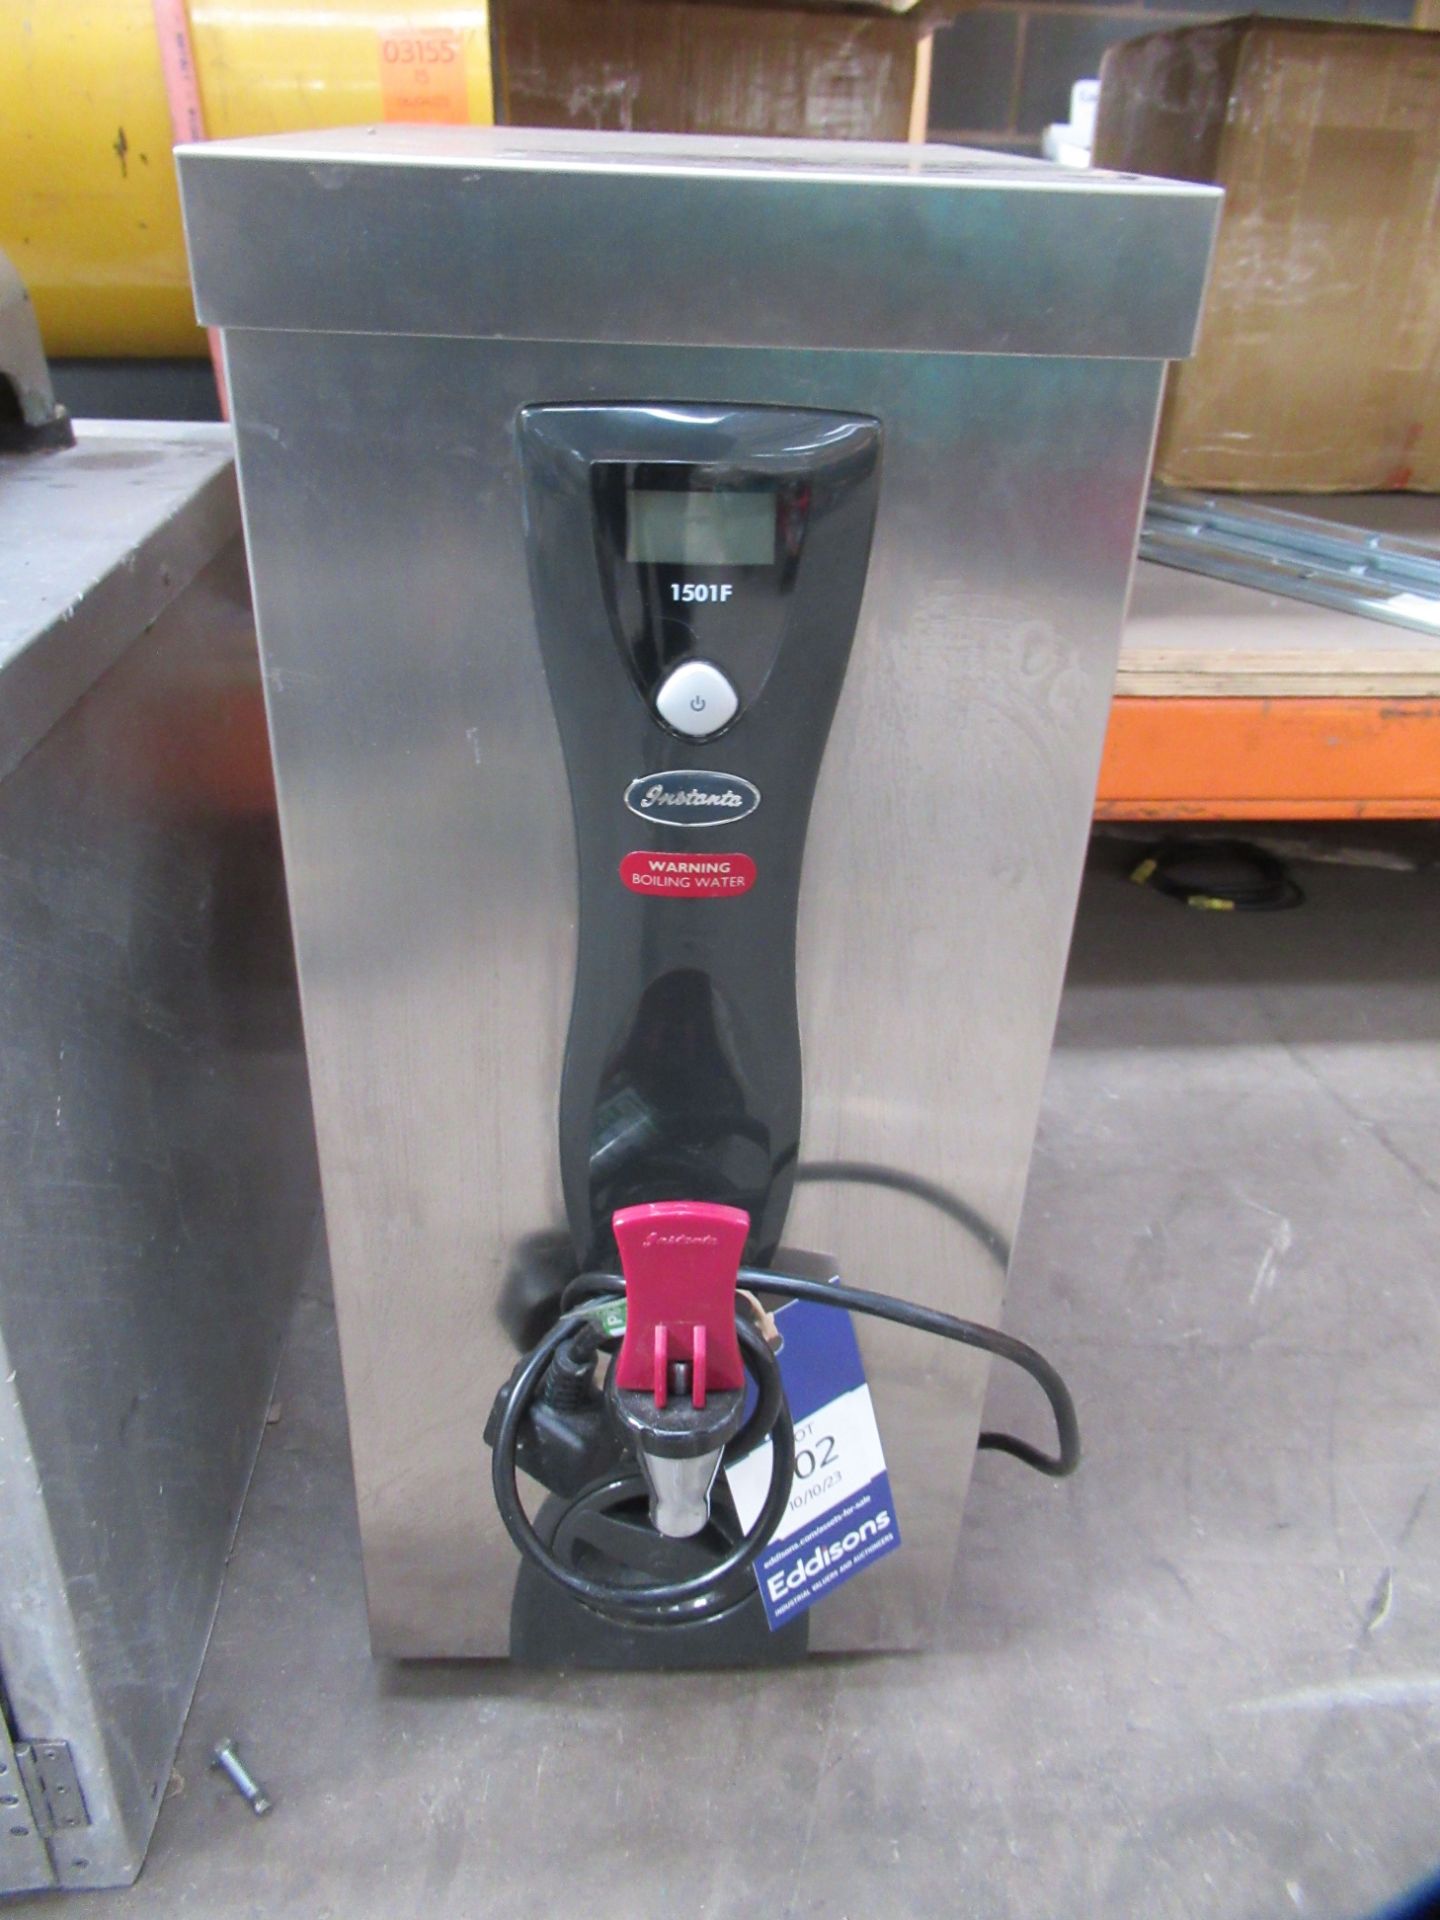 Instanta 1501F Hot Water Dispenser